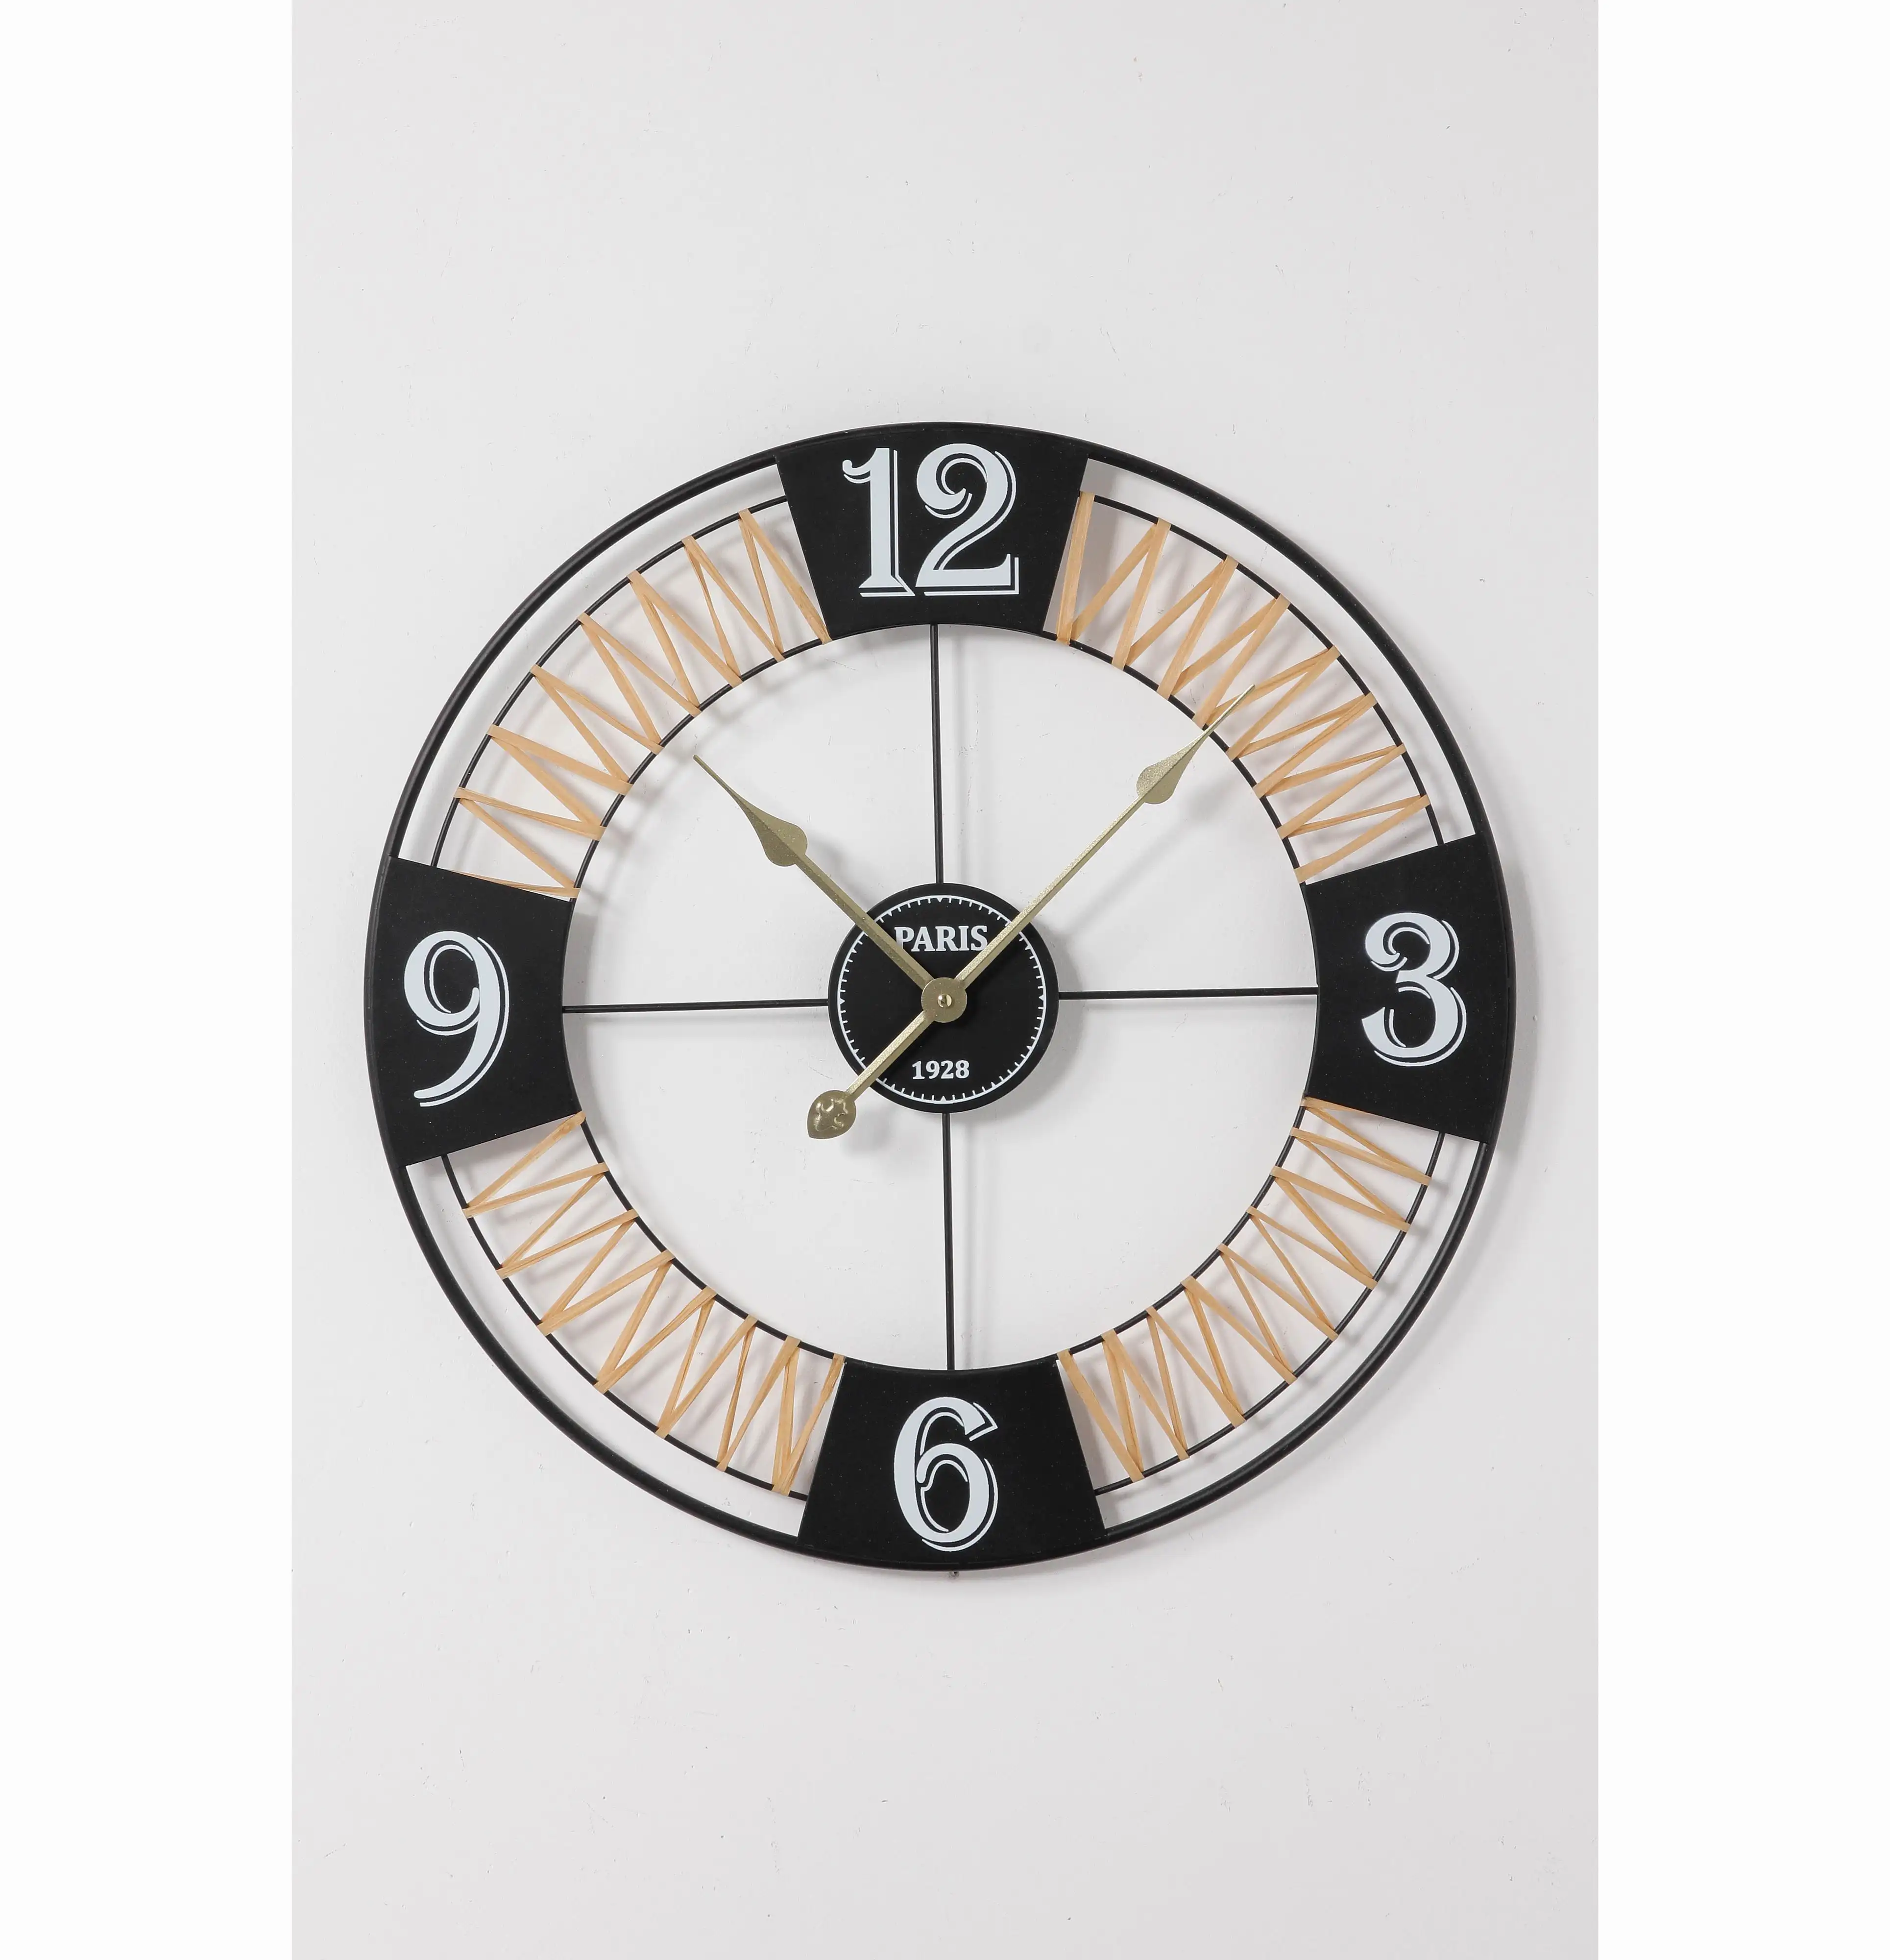 Relógios De Parede Revestido Decoração Decorativa Relógio De Parede Home Hotel Ao Ar Livre Decoração Artesanal Relógio De Ferro